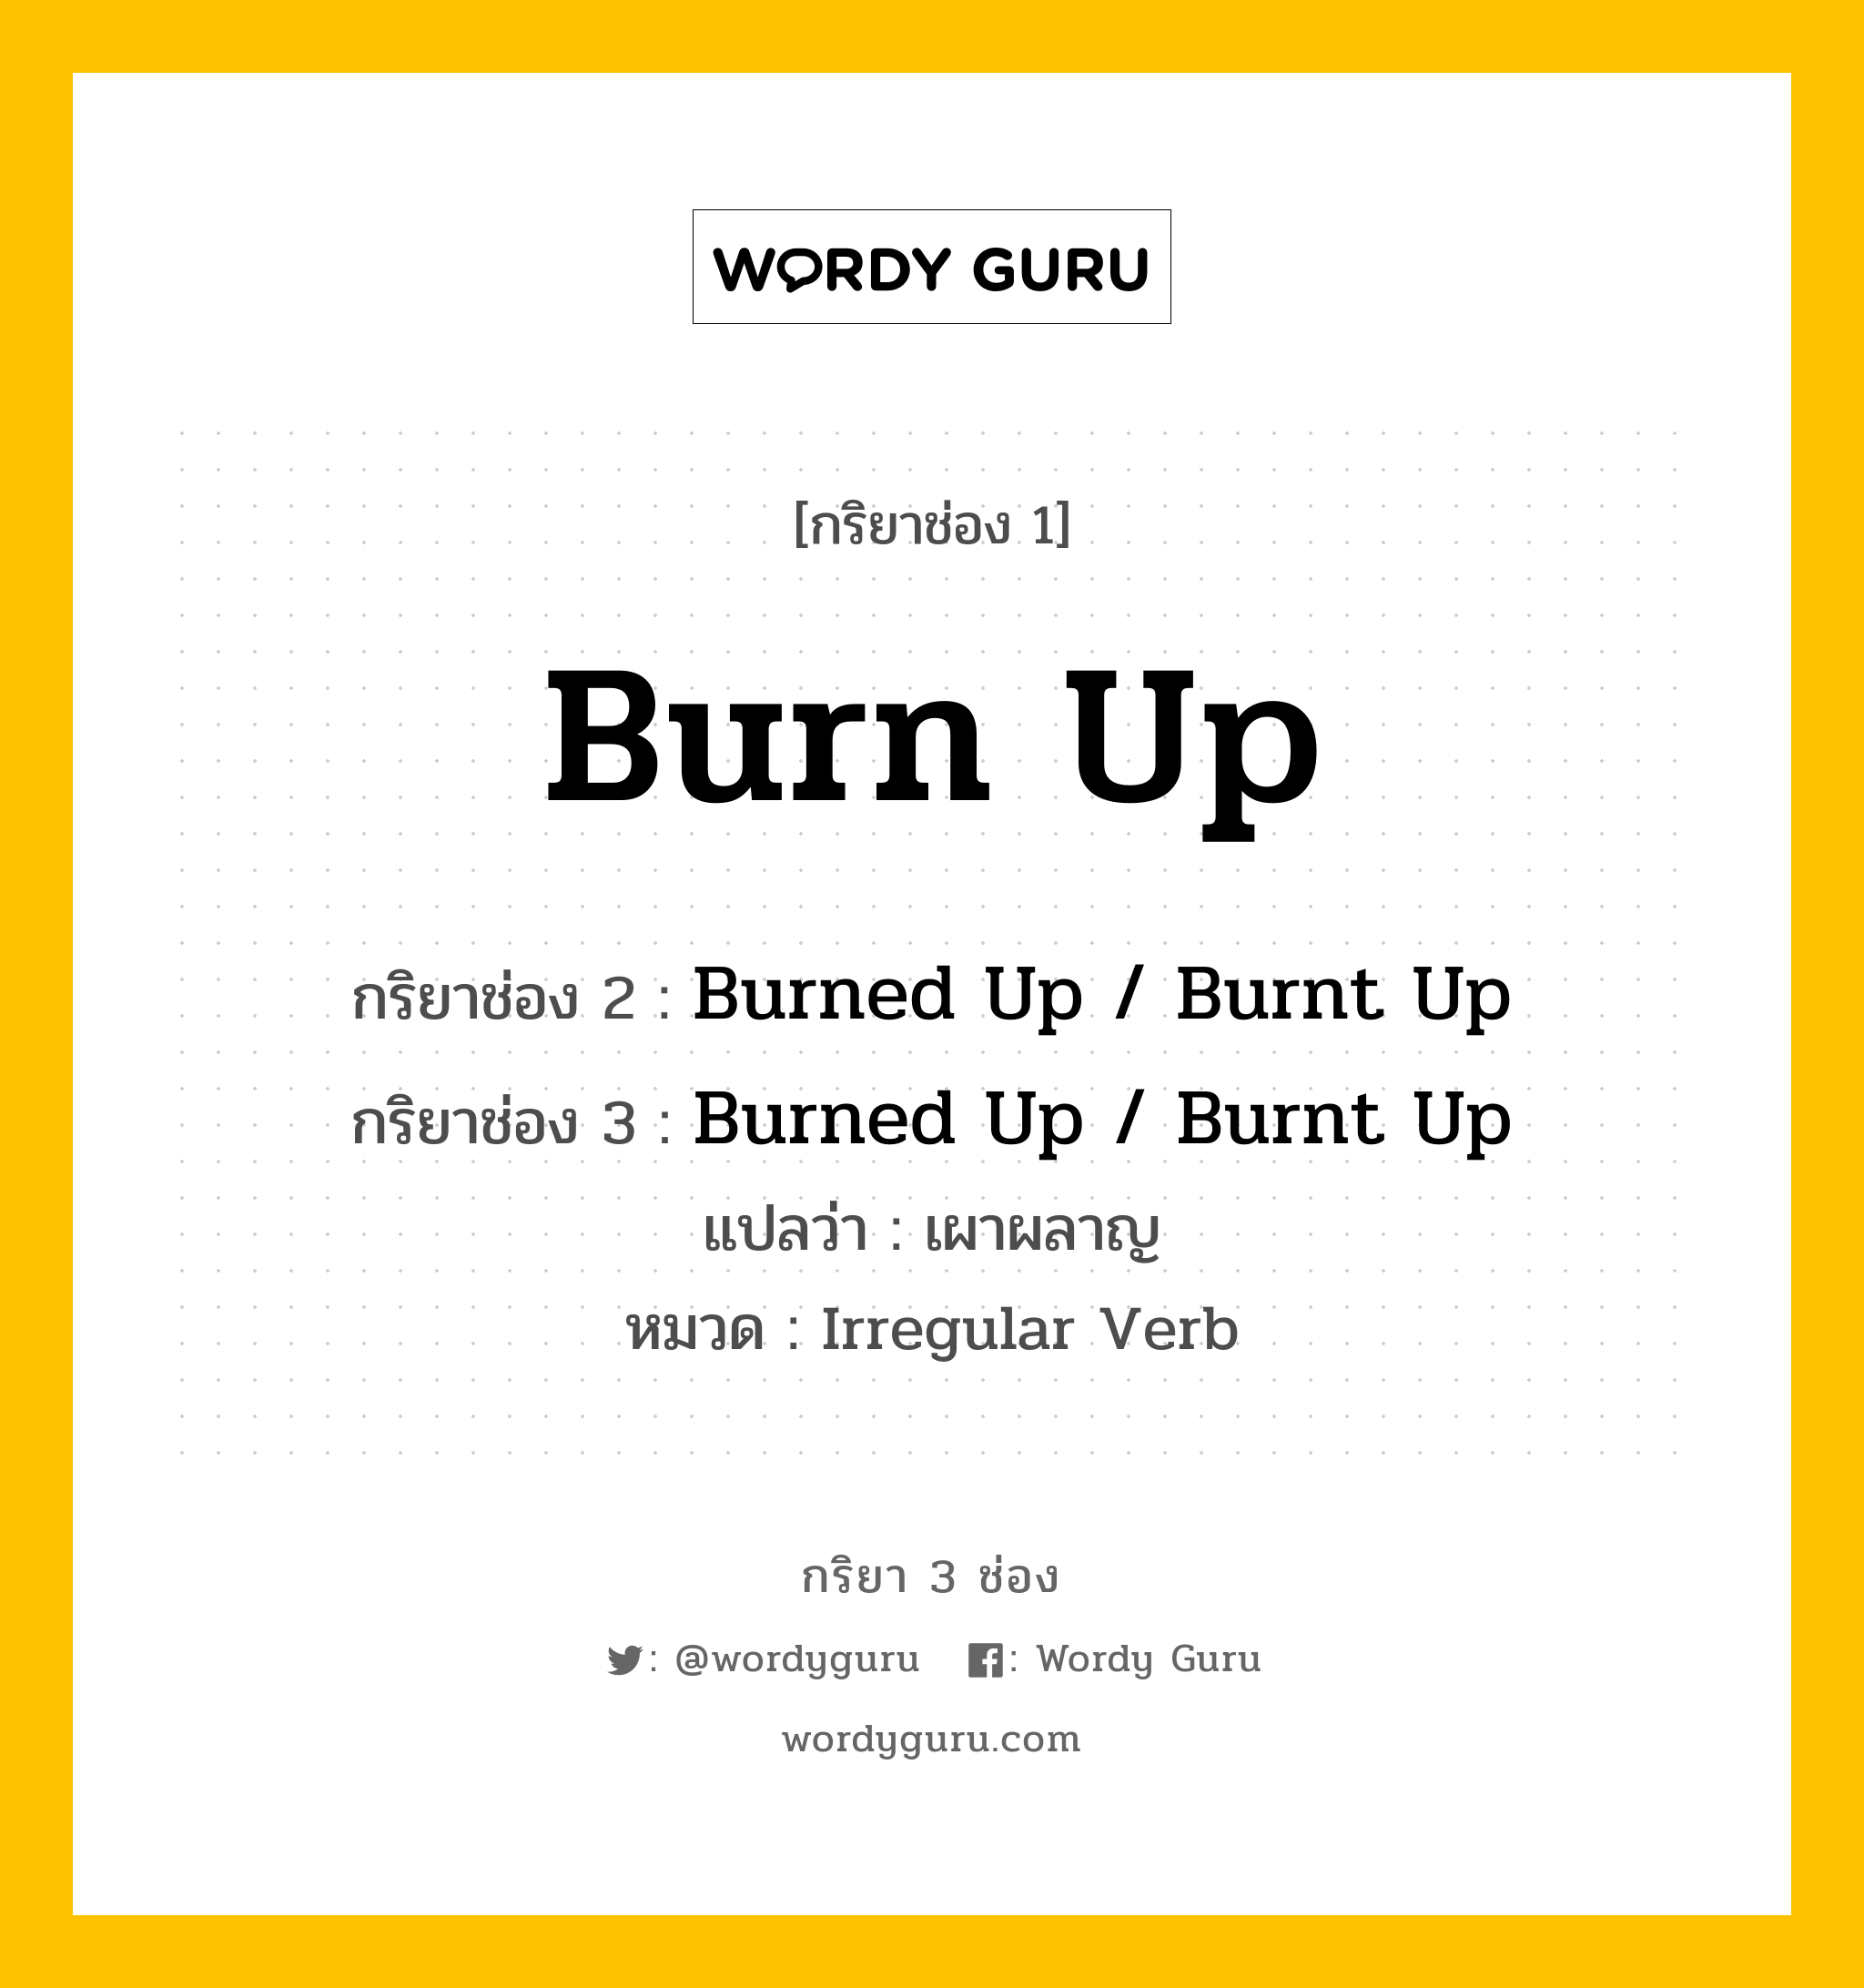 กริยา 3 ช่อง ของ Burn Up คืออะไร? มาดูคำอ่าน คำแปลกันเลย, กริยาช่อง 1 Burn Up กริยาช่อง 2 Burned Up / Burnt Up กริยาช่อง 3 Burned Up / Burnt Up แปลว่า เผาผลาญ หมวด Irregular Verb หมวด Irregular Verb